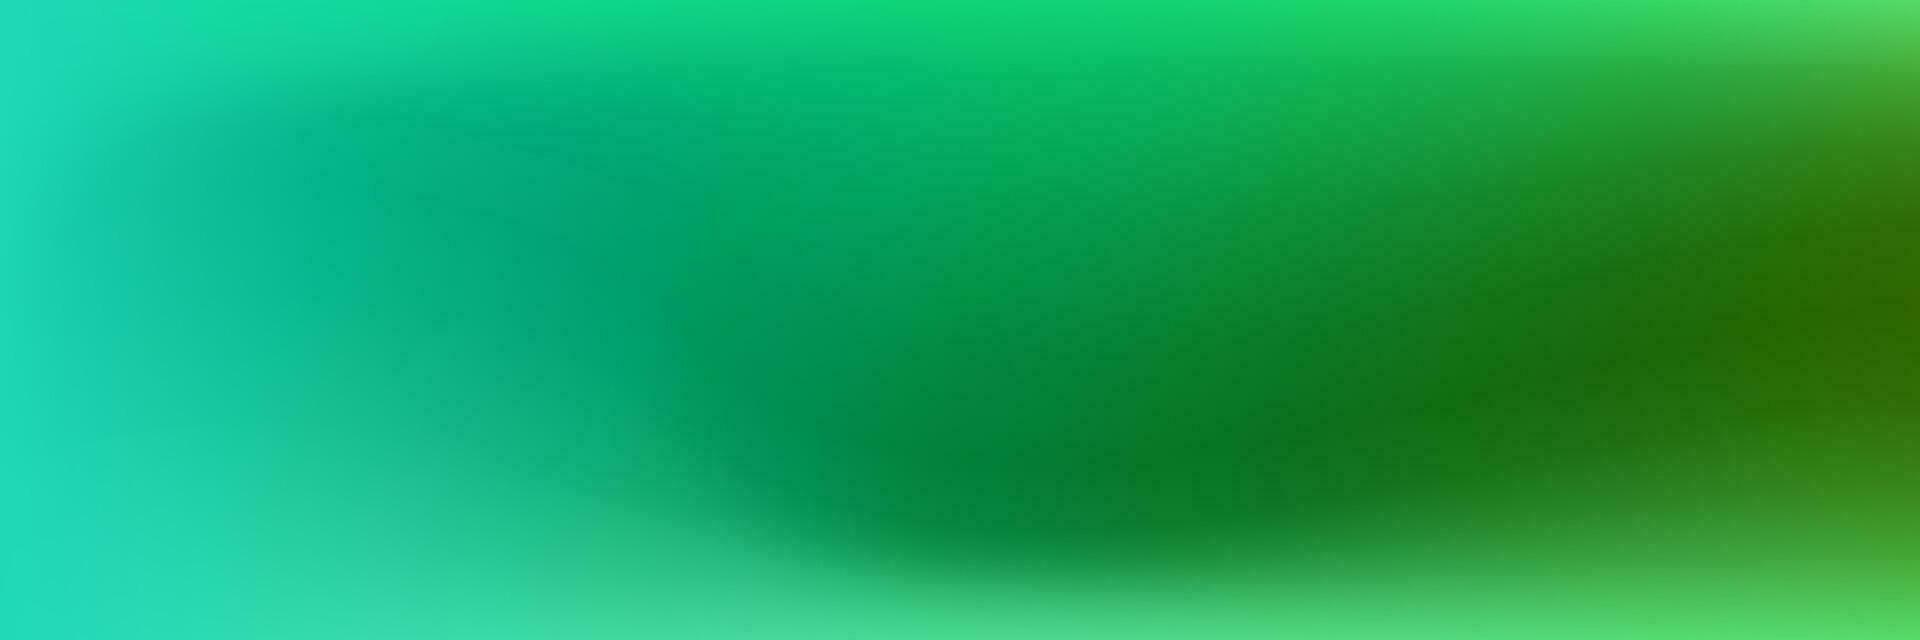 néon flou vague.gradient conception avec vert, menthe bleu couleurs.vecteur abstrait brillant vert pente engrener. vecteur